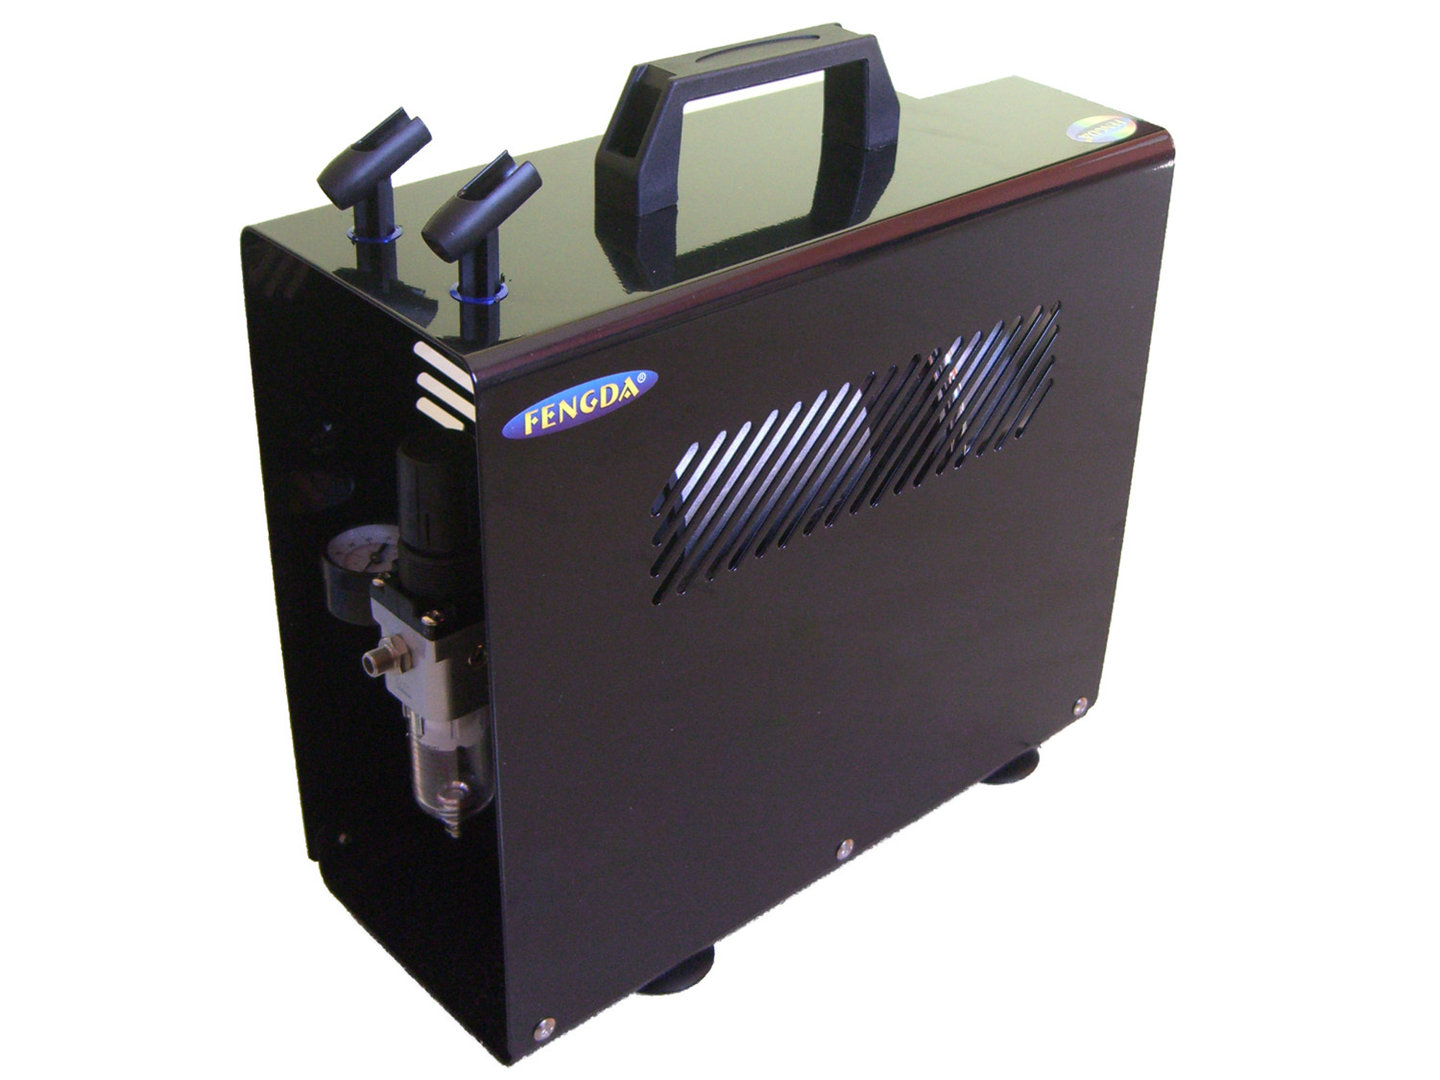 Airbrush Hobby Zweikolben Kompressor mit Druckbehälter und Deckel Fengda® AS-196 A